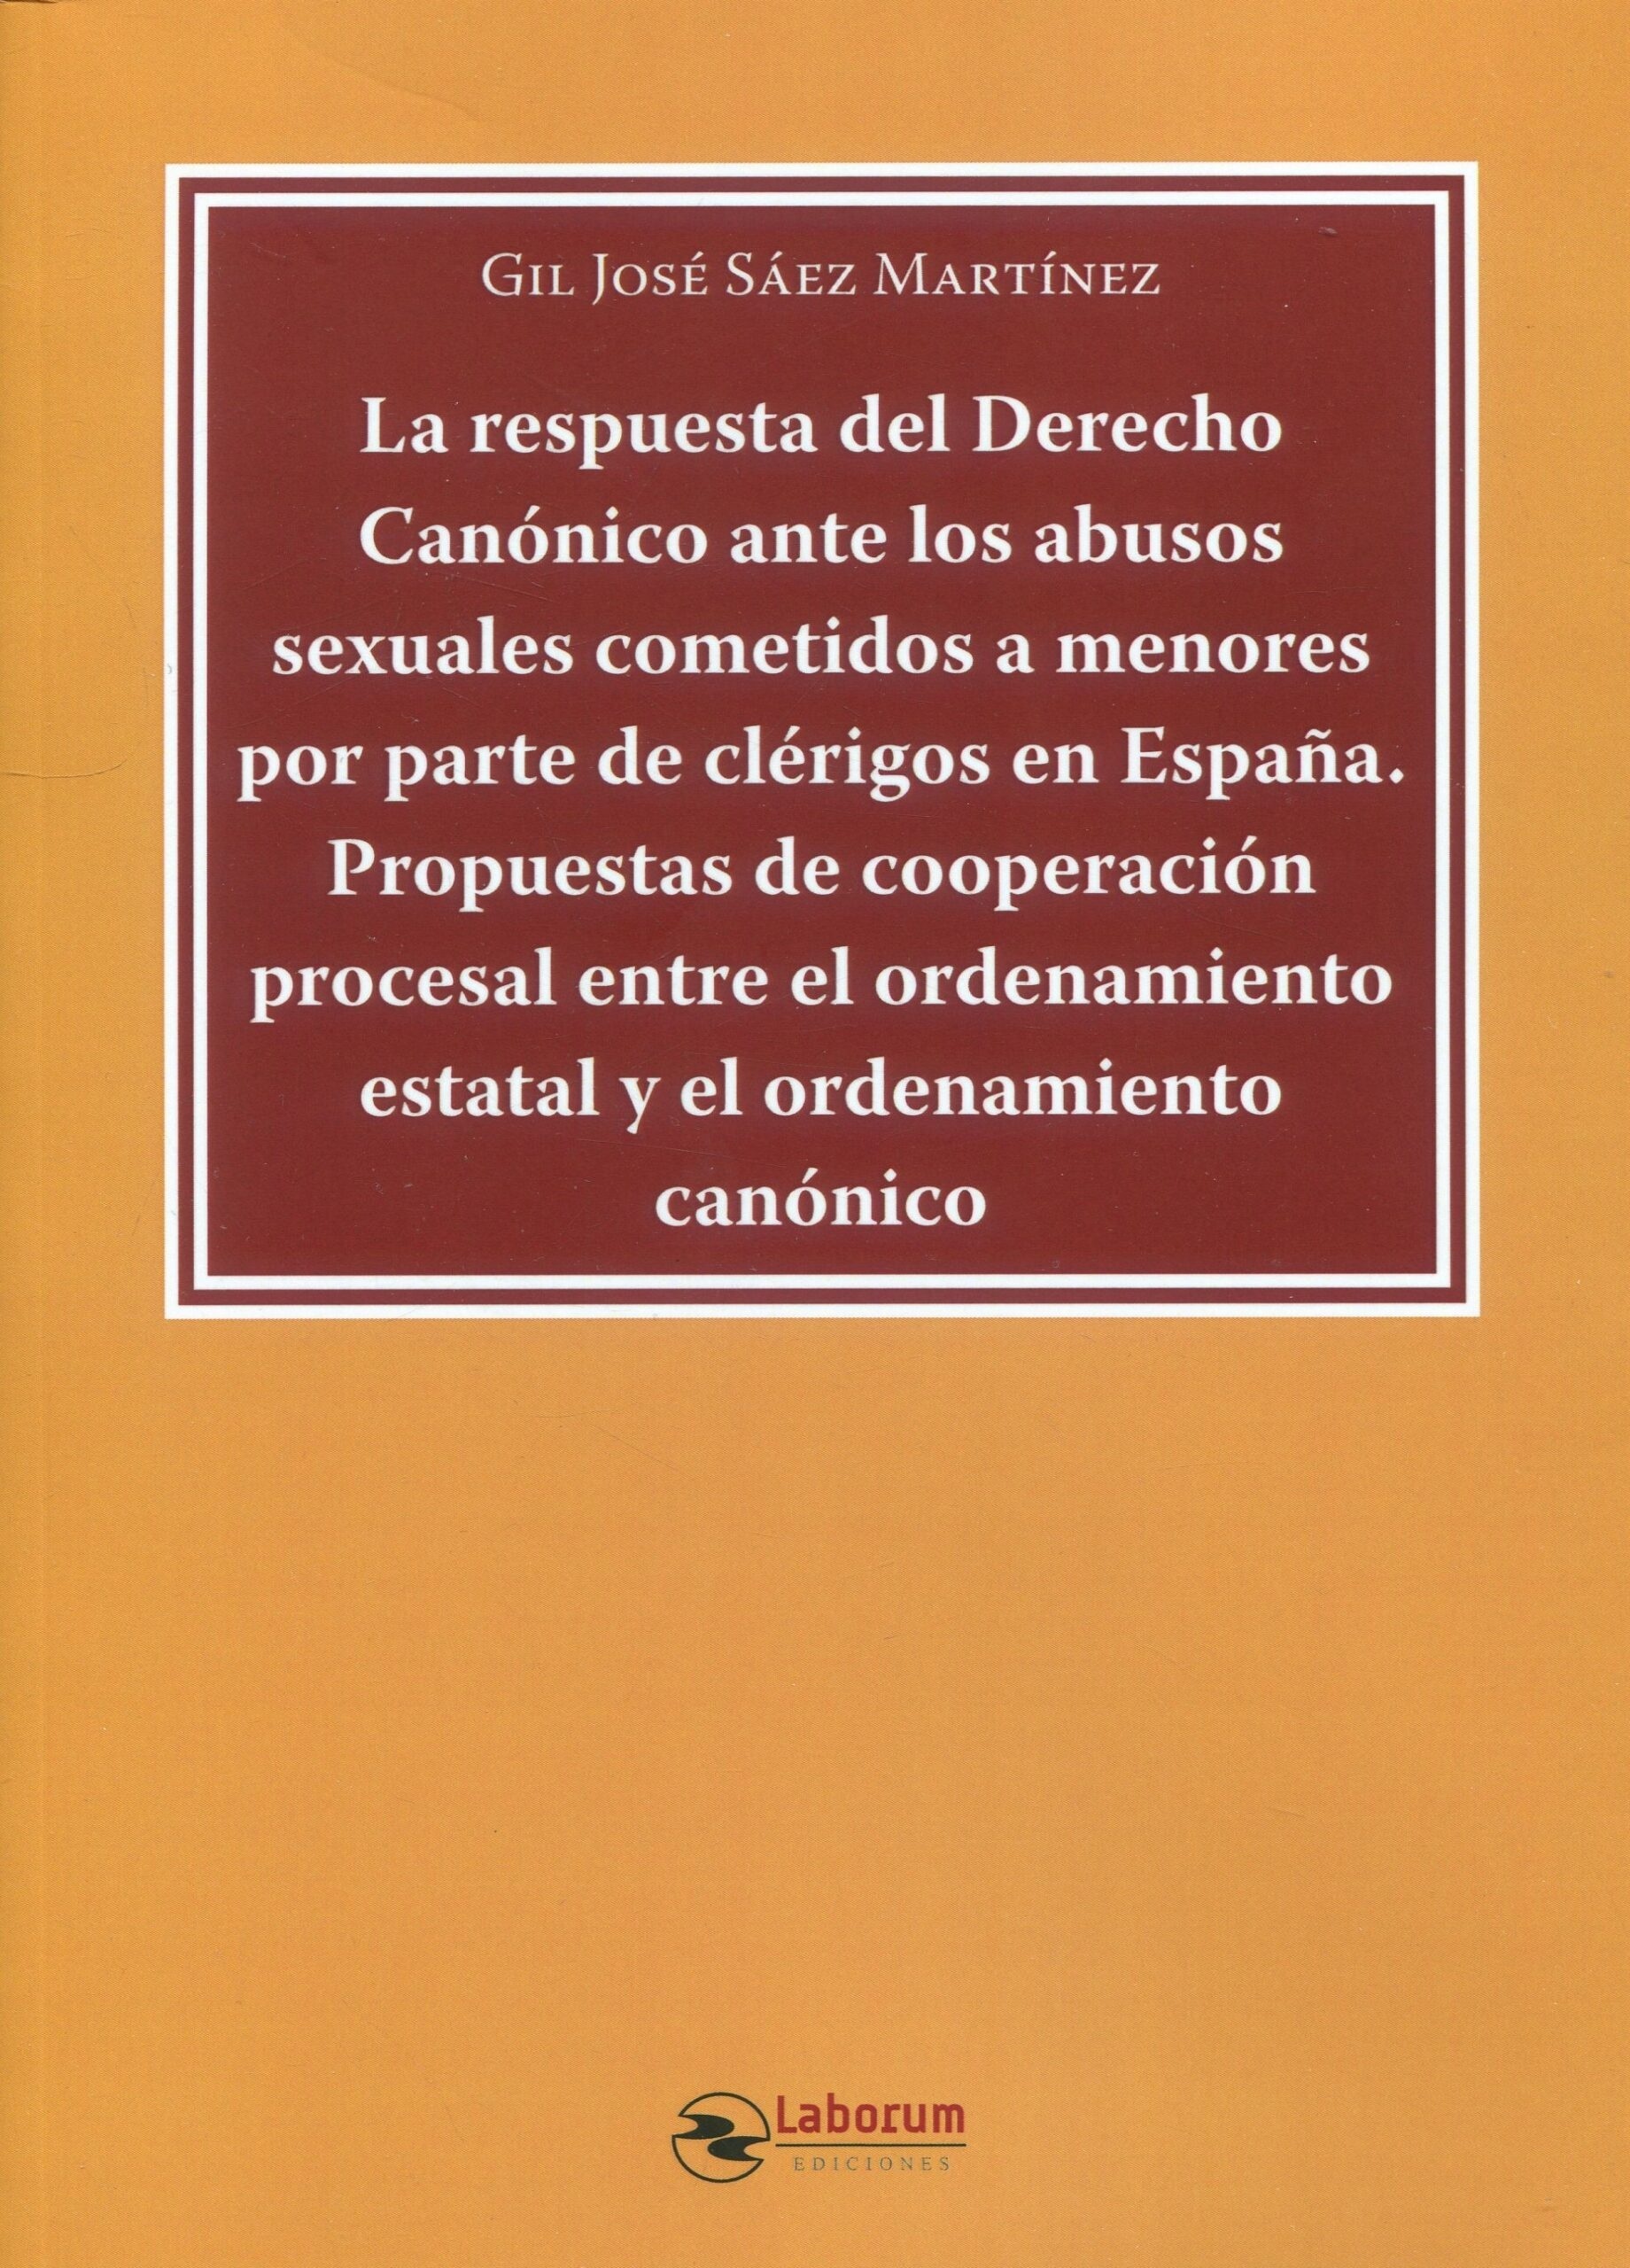 Respuesta del derecho canónico ante los abusos sexuales cometidos a menores por parte de clérigos en España. "Propuestas de cooperación procesal entre el ordenamiento estatal y el ordenamiento canónico"